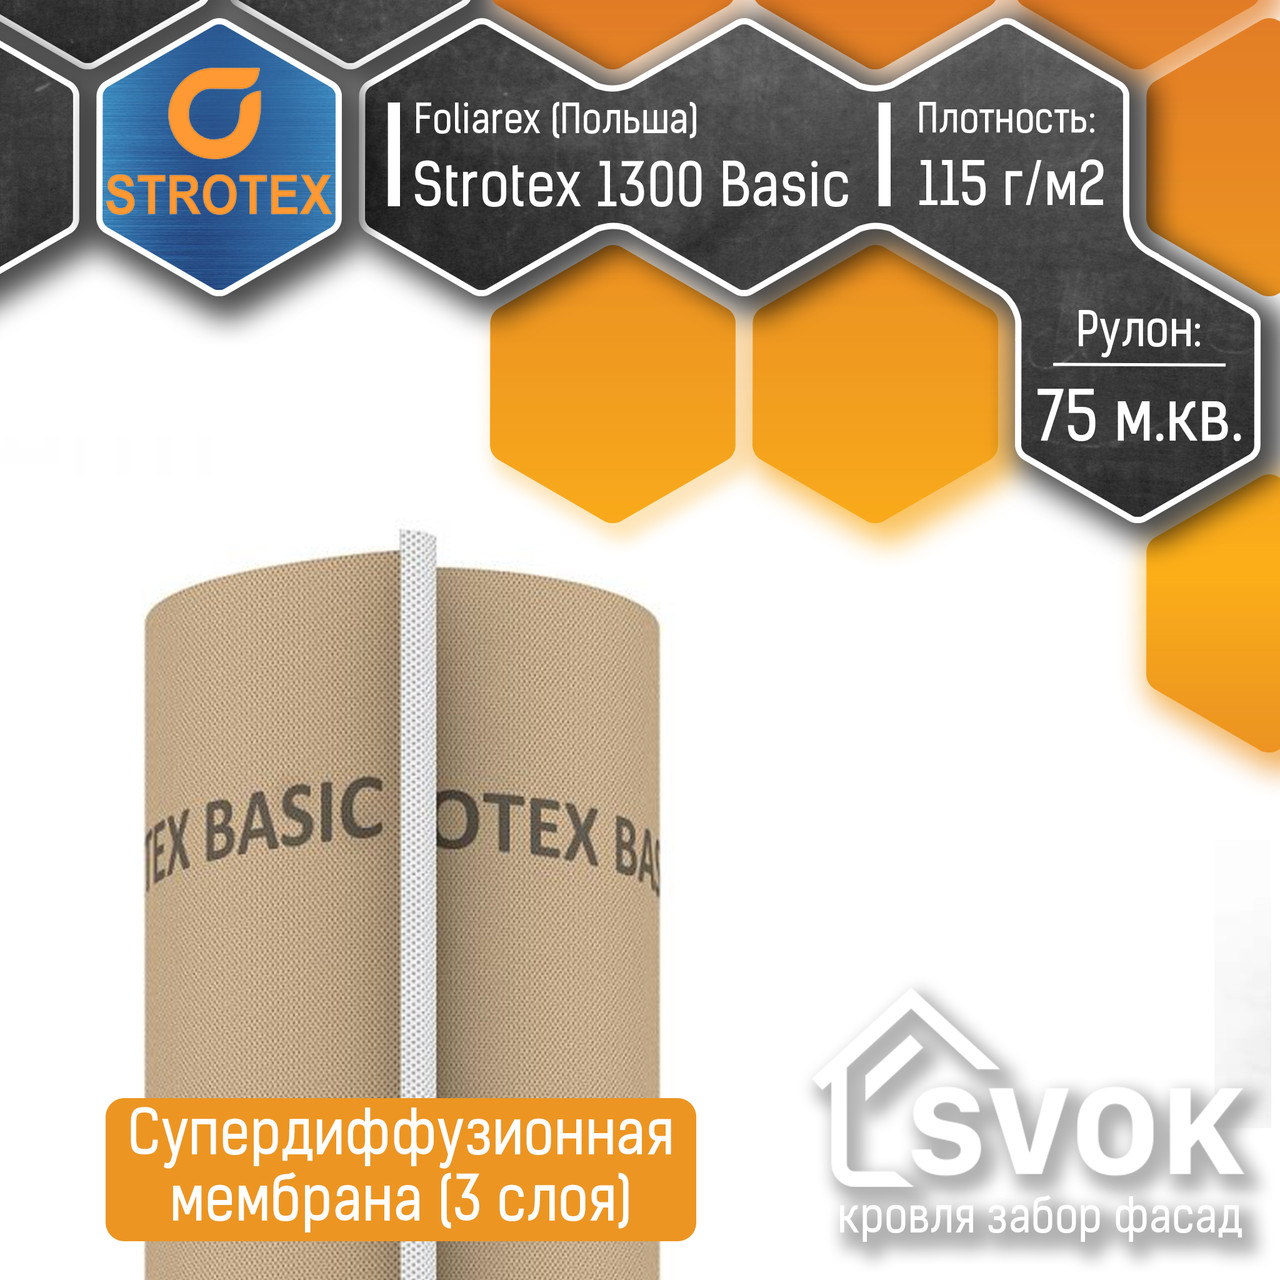 Супердиффузионная мембрана Strotex 1300 Basic (3 слоя, 115 г/м2, Польша)